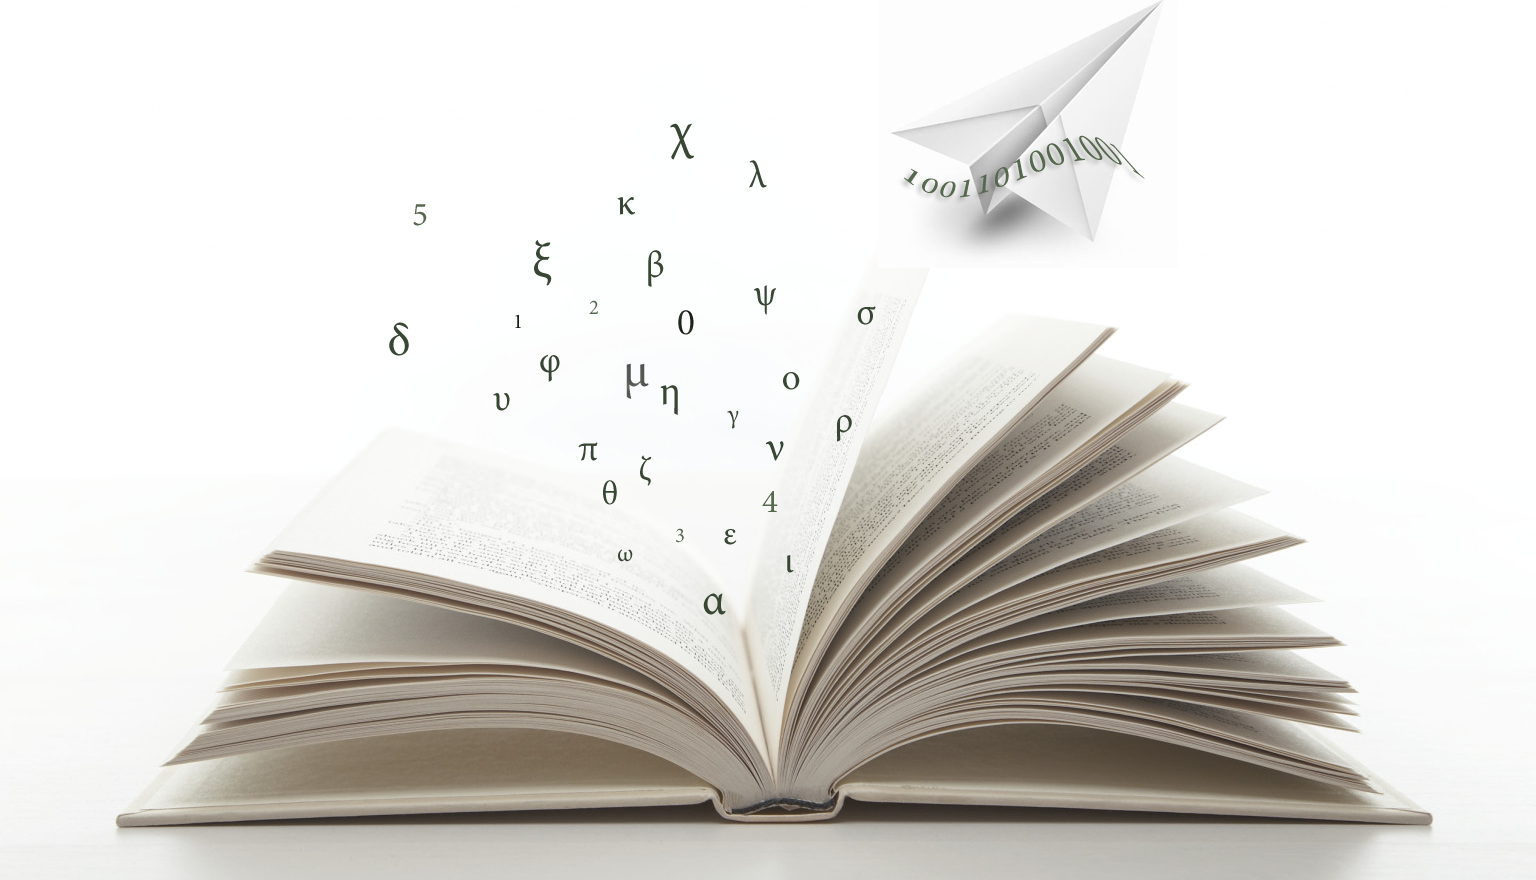 Φωτογραφία έντυπου βιβλίου όπου τα γράμματα βγαίνουν από τις σελίδες και γίνονται ψηφιακές για να σταλούν με μια 'σαϊτα'.